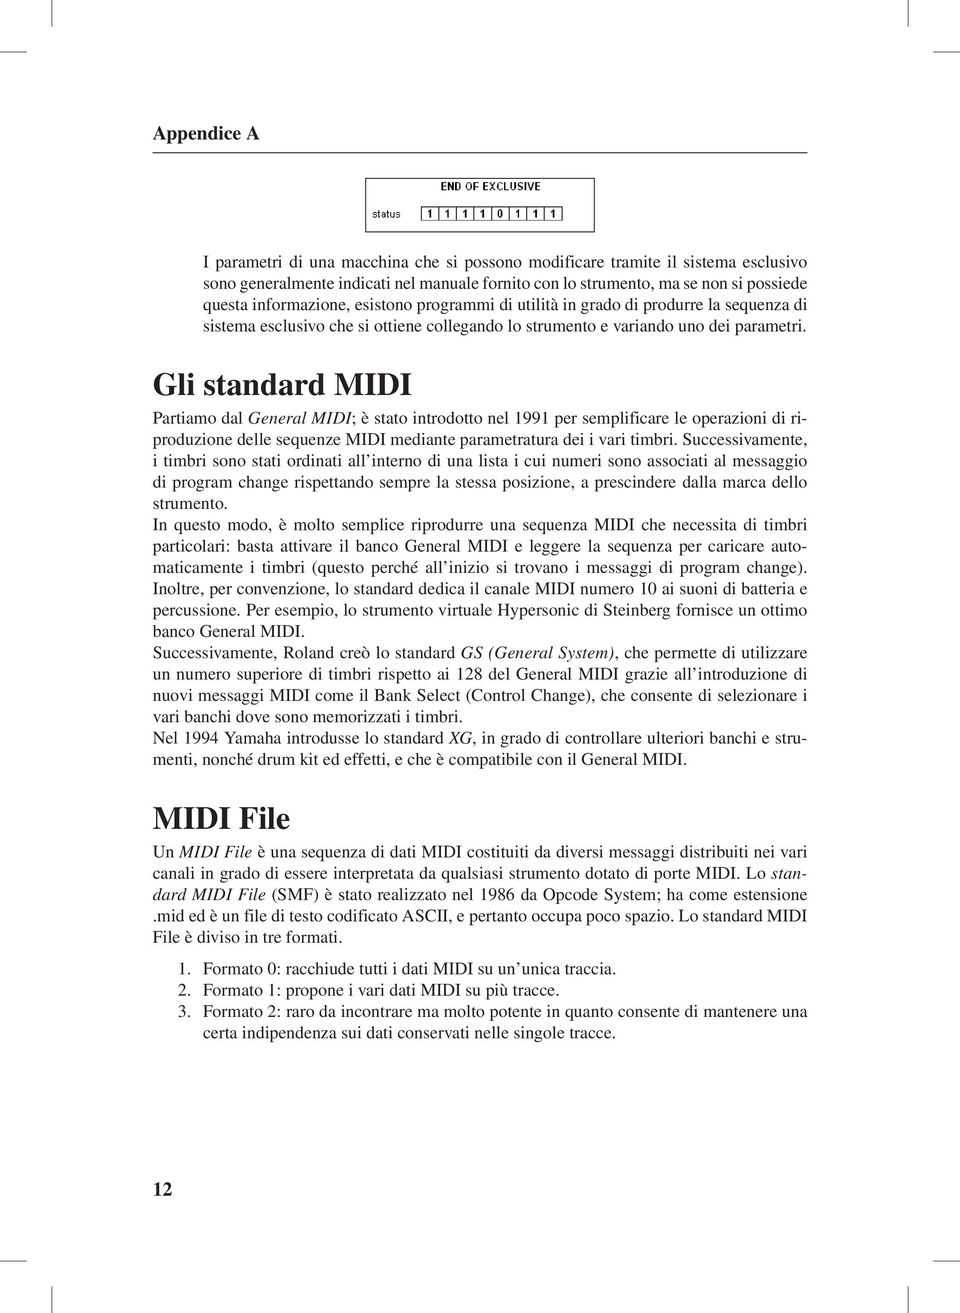 Gli standard MIDI Partiamo dal General MIDI; è stato introdotto nel 1991 per semplificare le operazioni di riproduzione delle sequenze MIDI mediante parametratura dei i vari timbri.